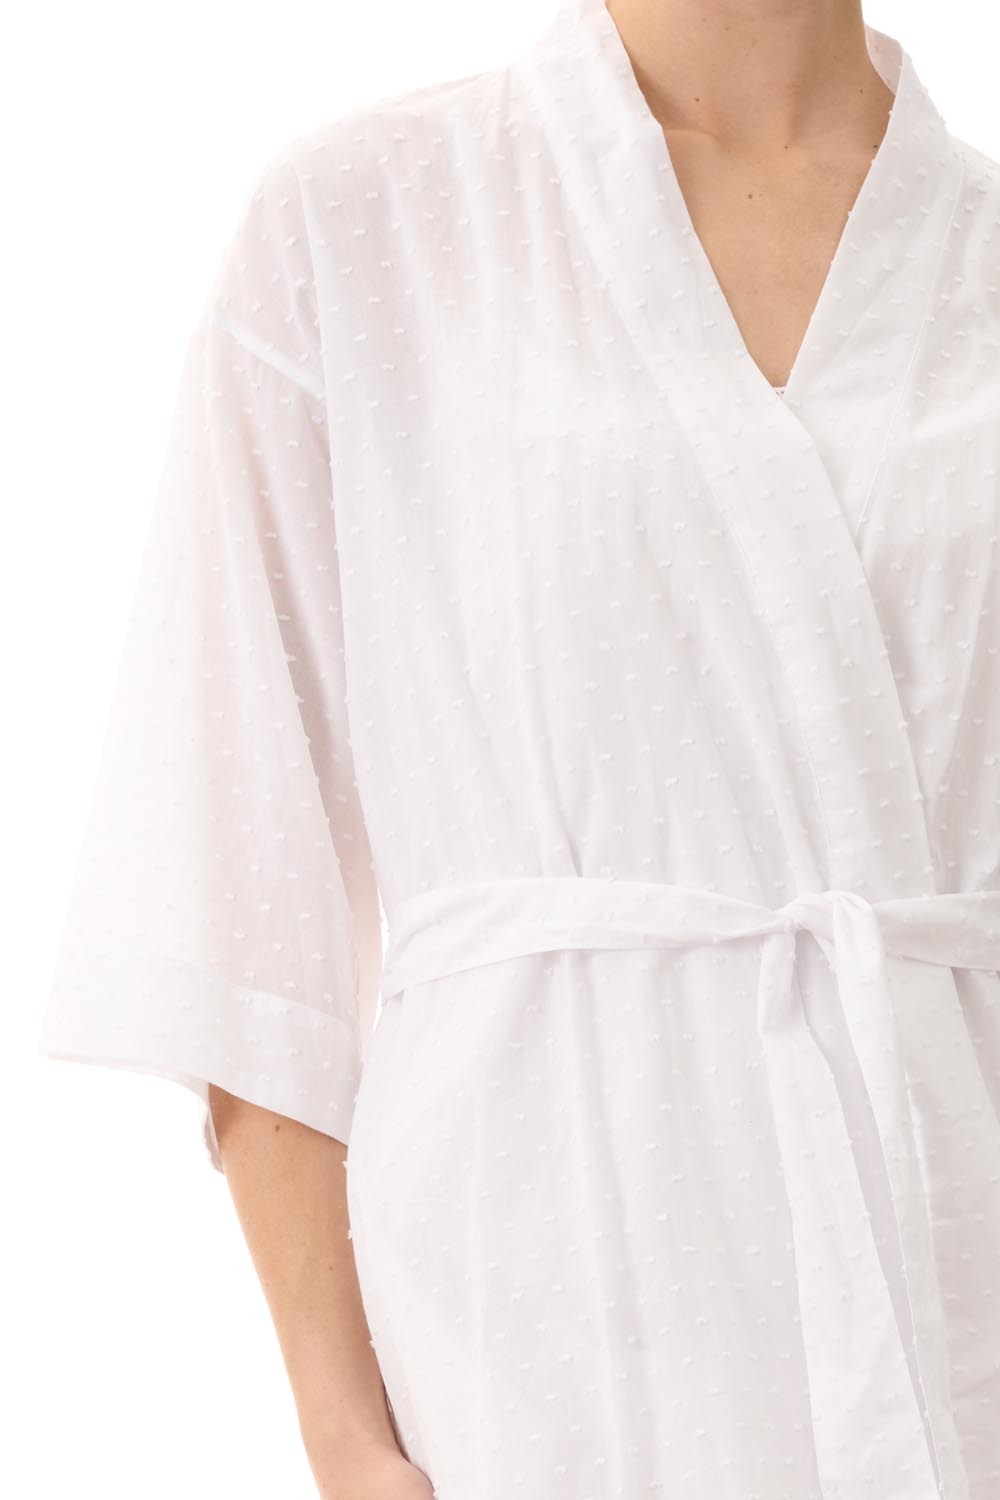 Women's Waffle Kimono Short Light Turquoise Bathrobe, Wholesale Bathrobes,  Spa Robes, Kids Robes, Cotton Robes — RobesNmore